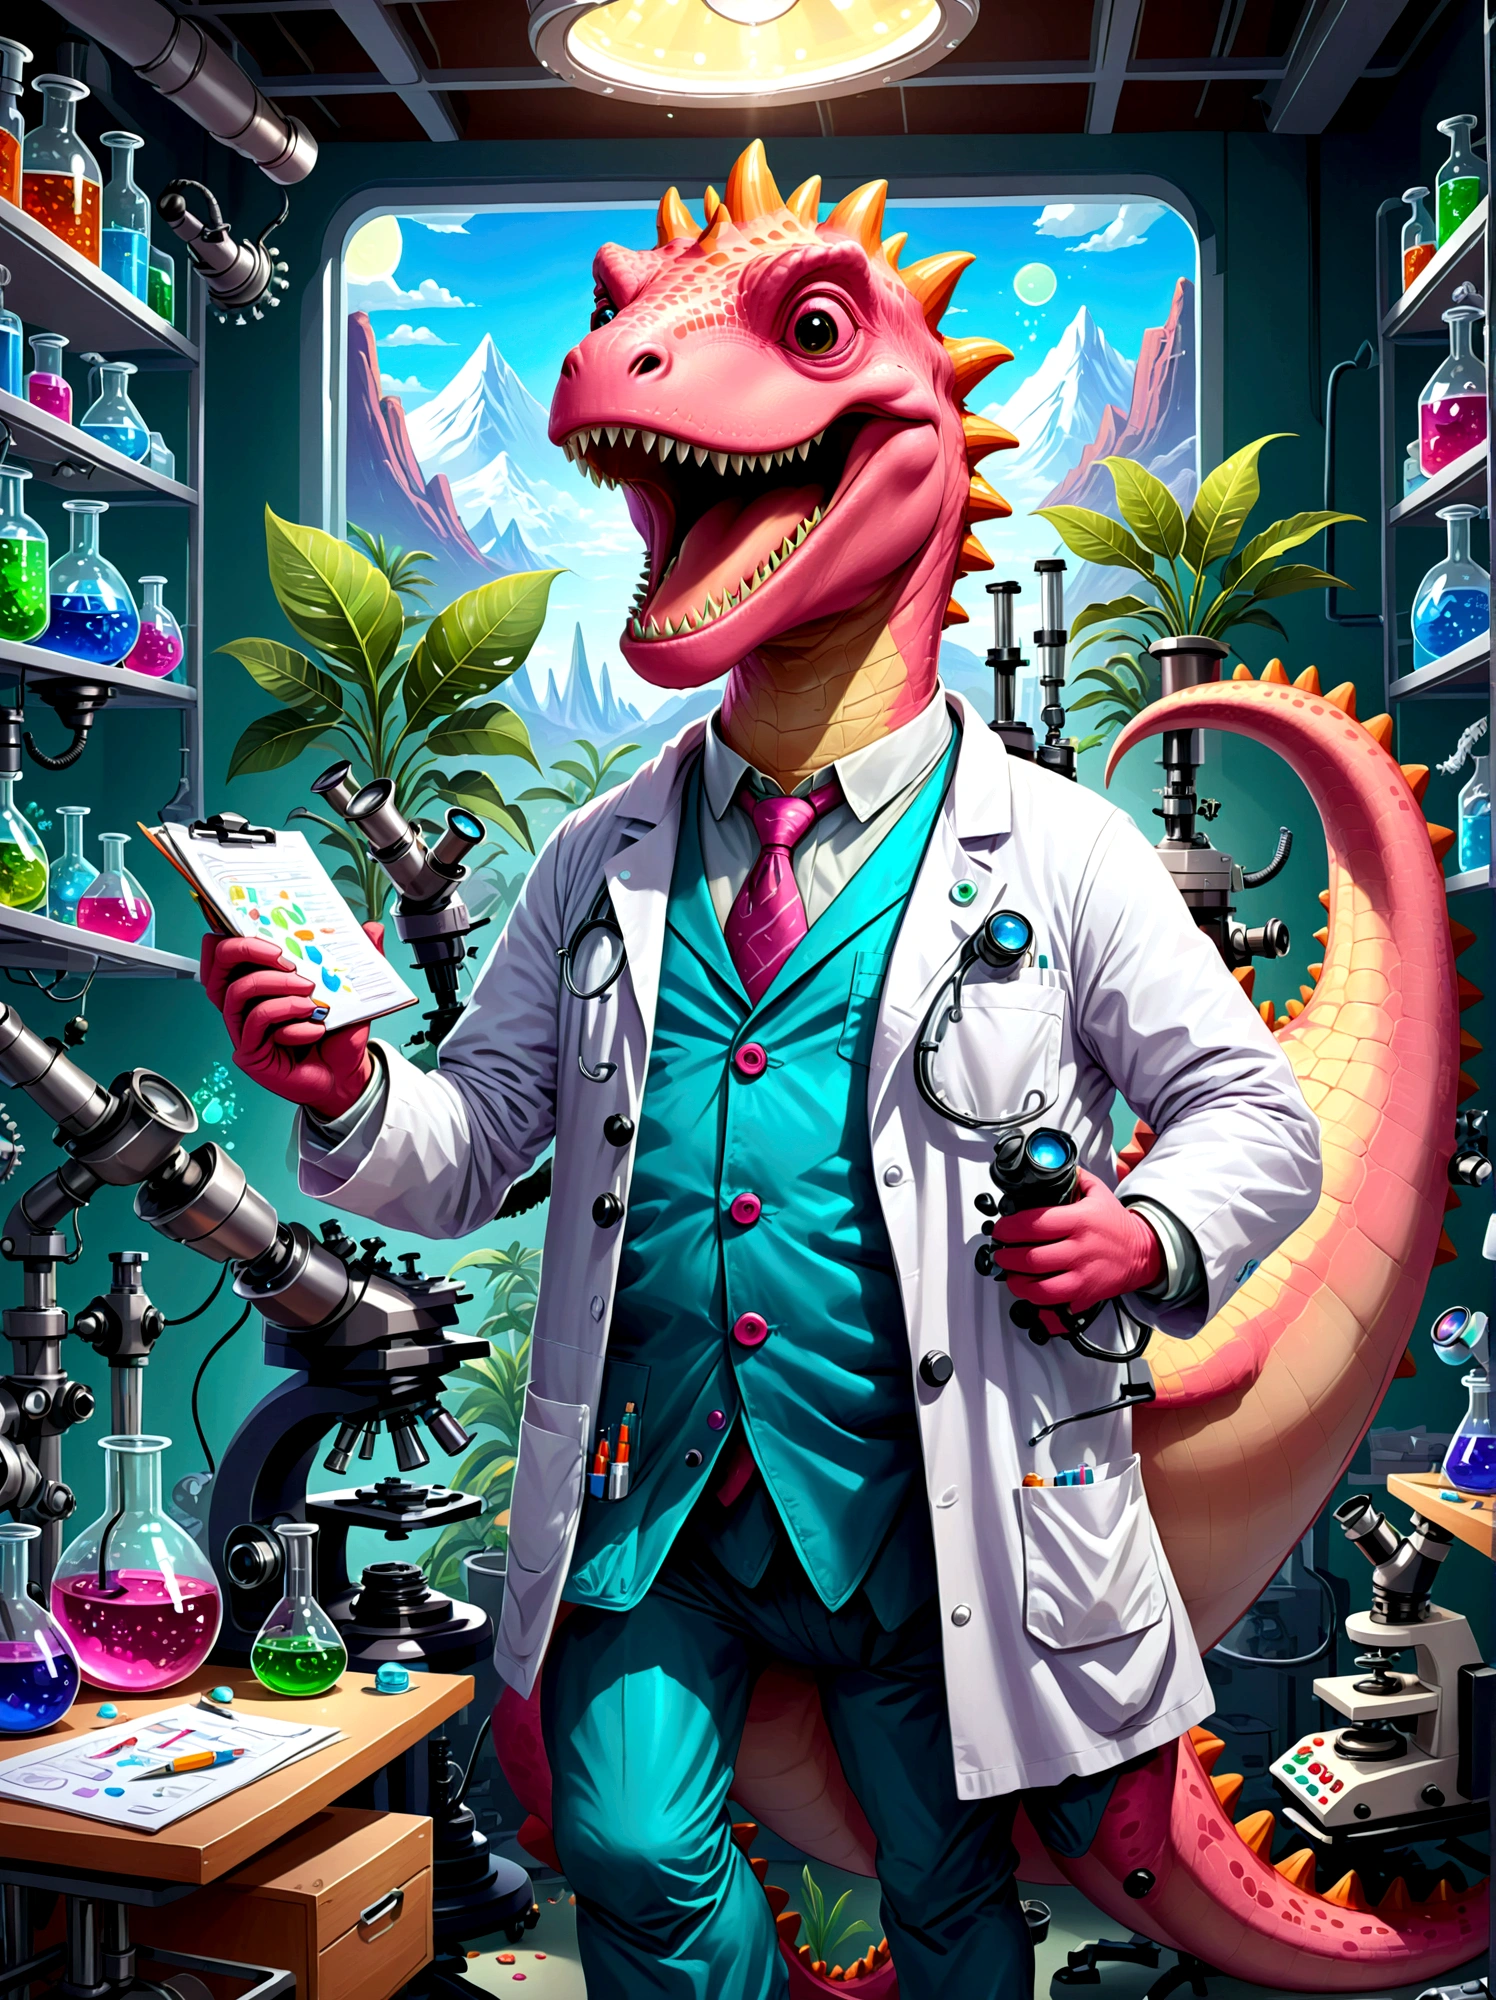 Un personaje de dinosaurio rosa con una amplia, sonrisa con dientes, vestido como un investigador, estan en un laboratorio, rodeado de equipos científicos como microscopios, vasos, Tablas y gráficos. El dinosaurio lleva una bata de laboratorio., Protección para los ojos, y sostiene un portapapeles en la mano, Los papeles están esparcidos, indicando un día de trabajo ocupado, El entorno del laboratorio está lleno de luz proveniente de lámparas fluorescentes en el techo., Ilustra esto en un estilo de dibujos animados.